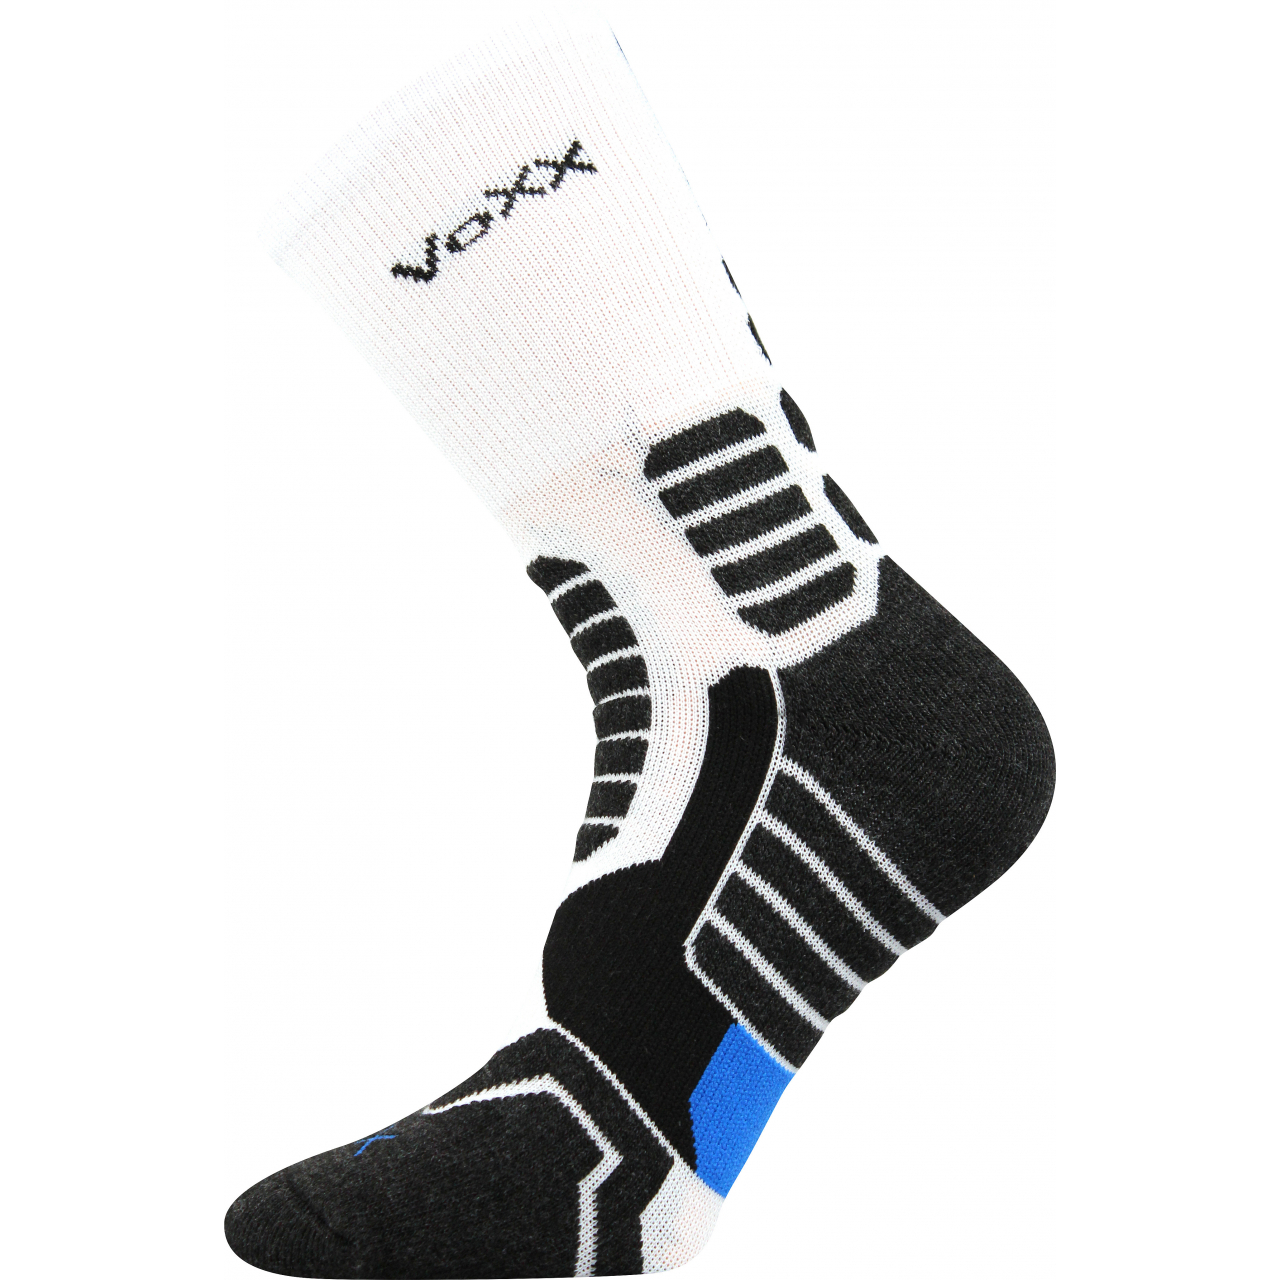 Ponožky kompresní unisex Voxx Ronin - bílé-černé, 43-46